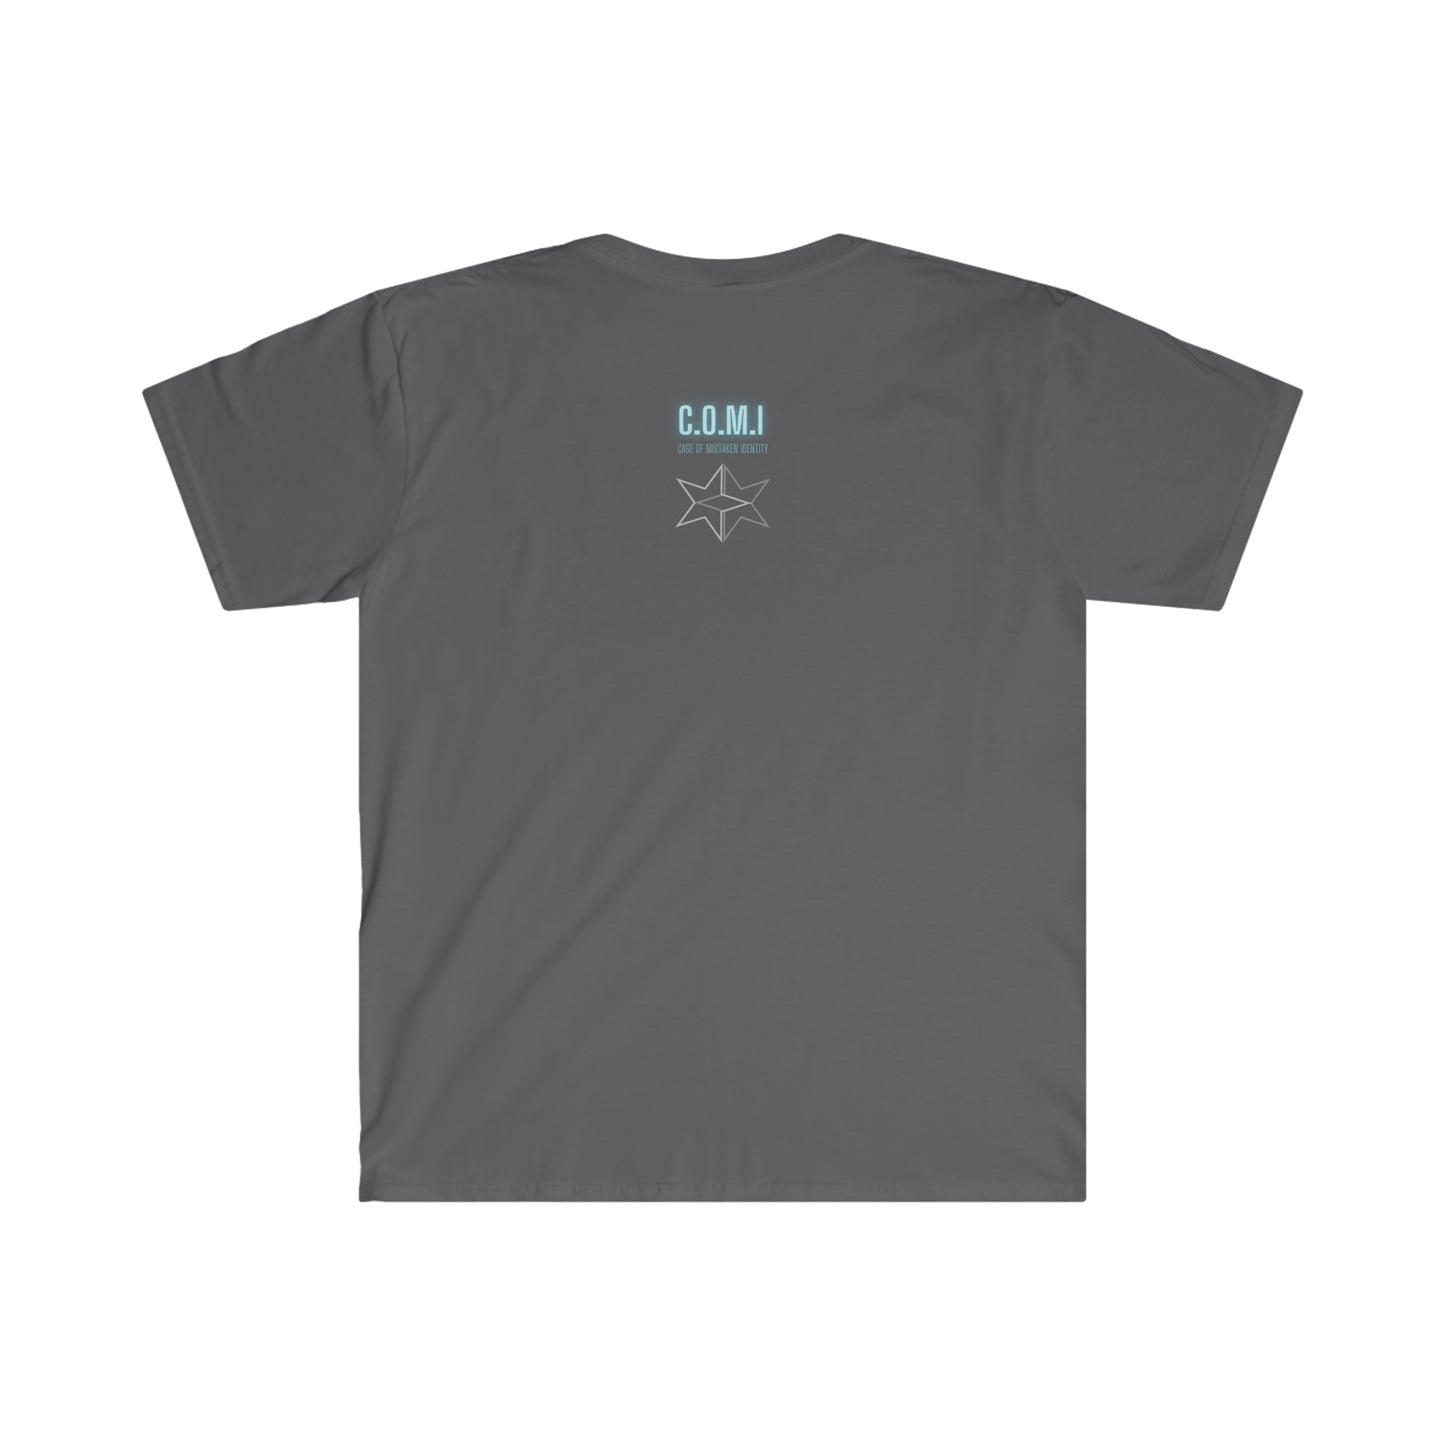 Datsun - Unisex Softstyle T-Shirt